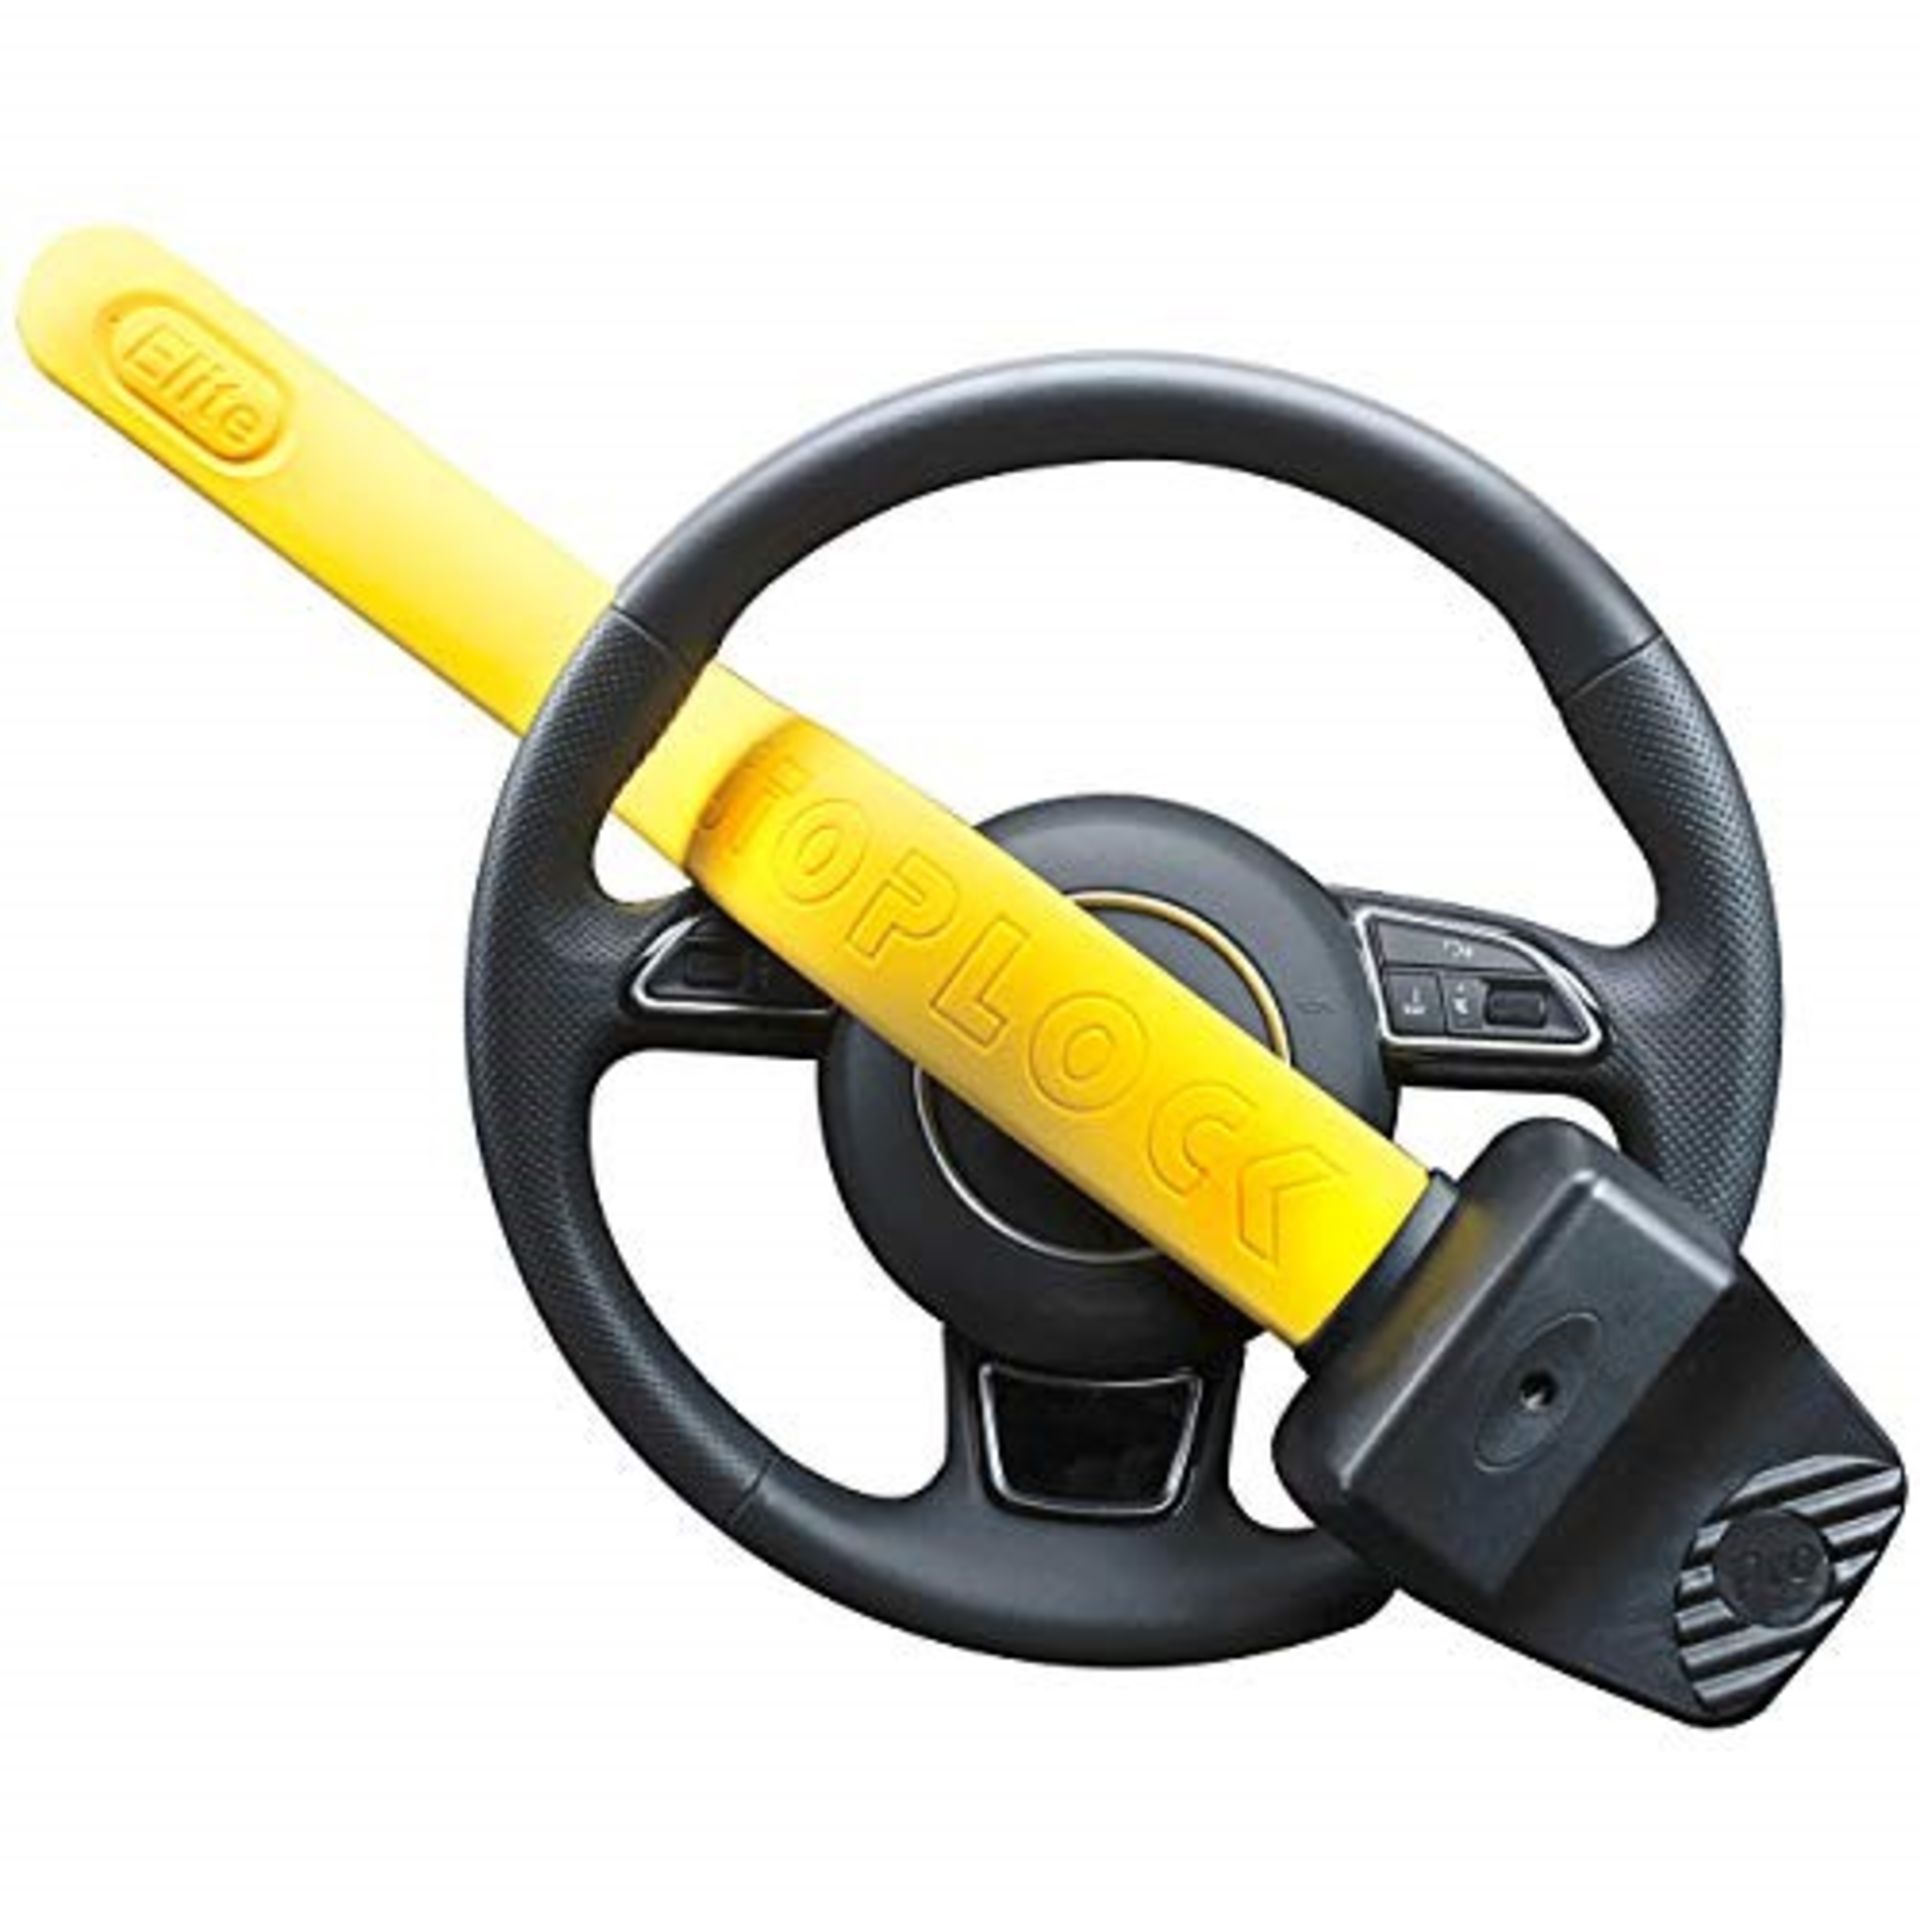 S�t�o�p�l�o�c�k� �H�G� �1�5�0�-�0�0� �P�r�o� �E�l�i�t�e� �C�a�r� �S�t�e�e�r�i�n�g� �W�h�e�e�l� �L�o�